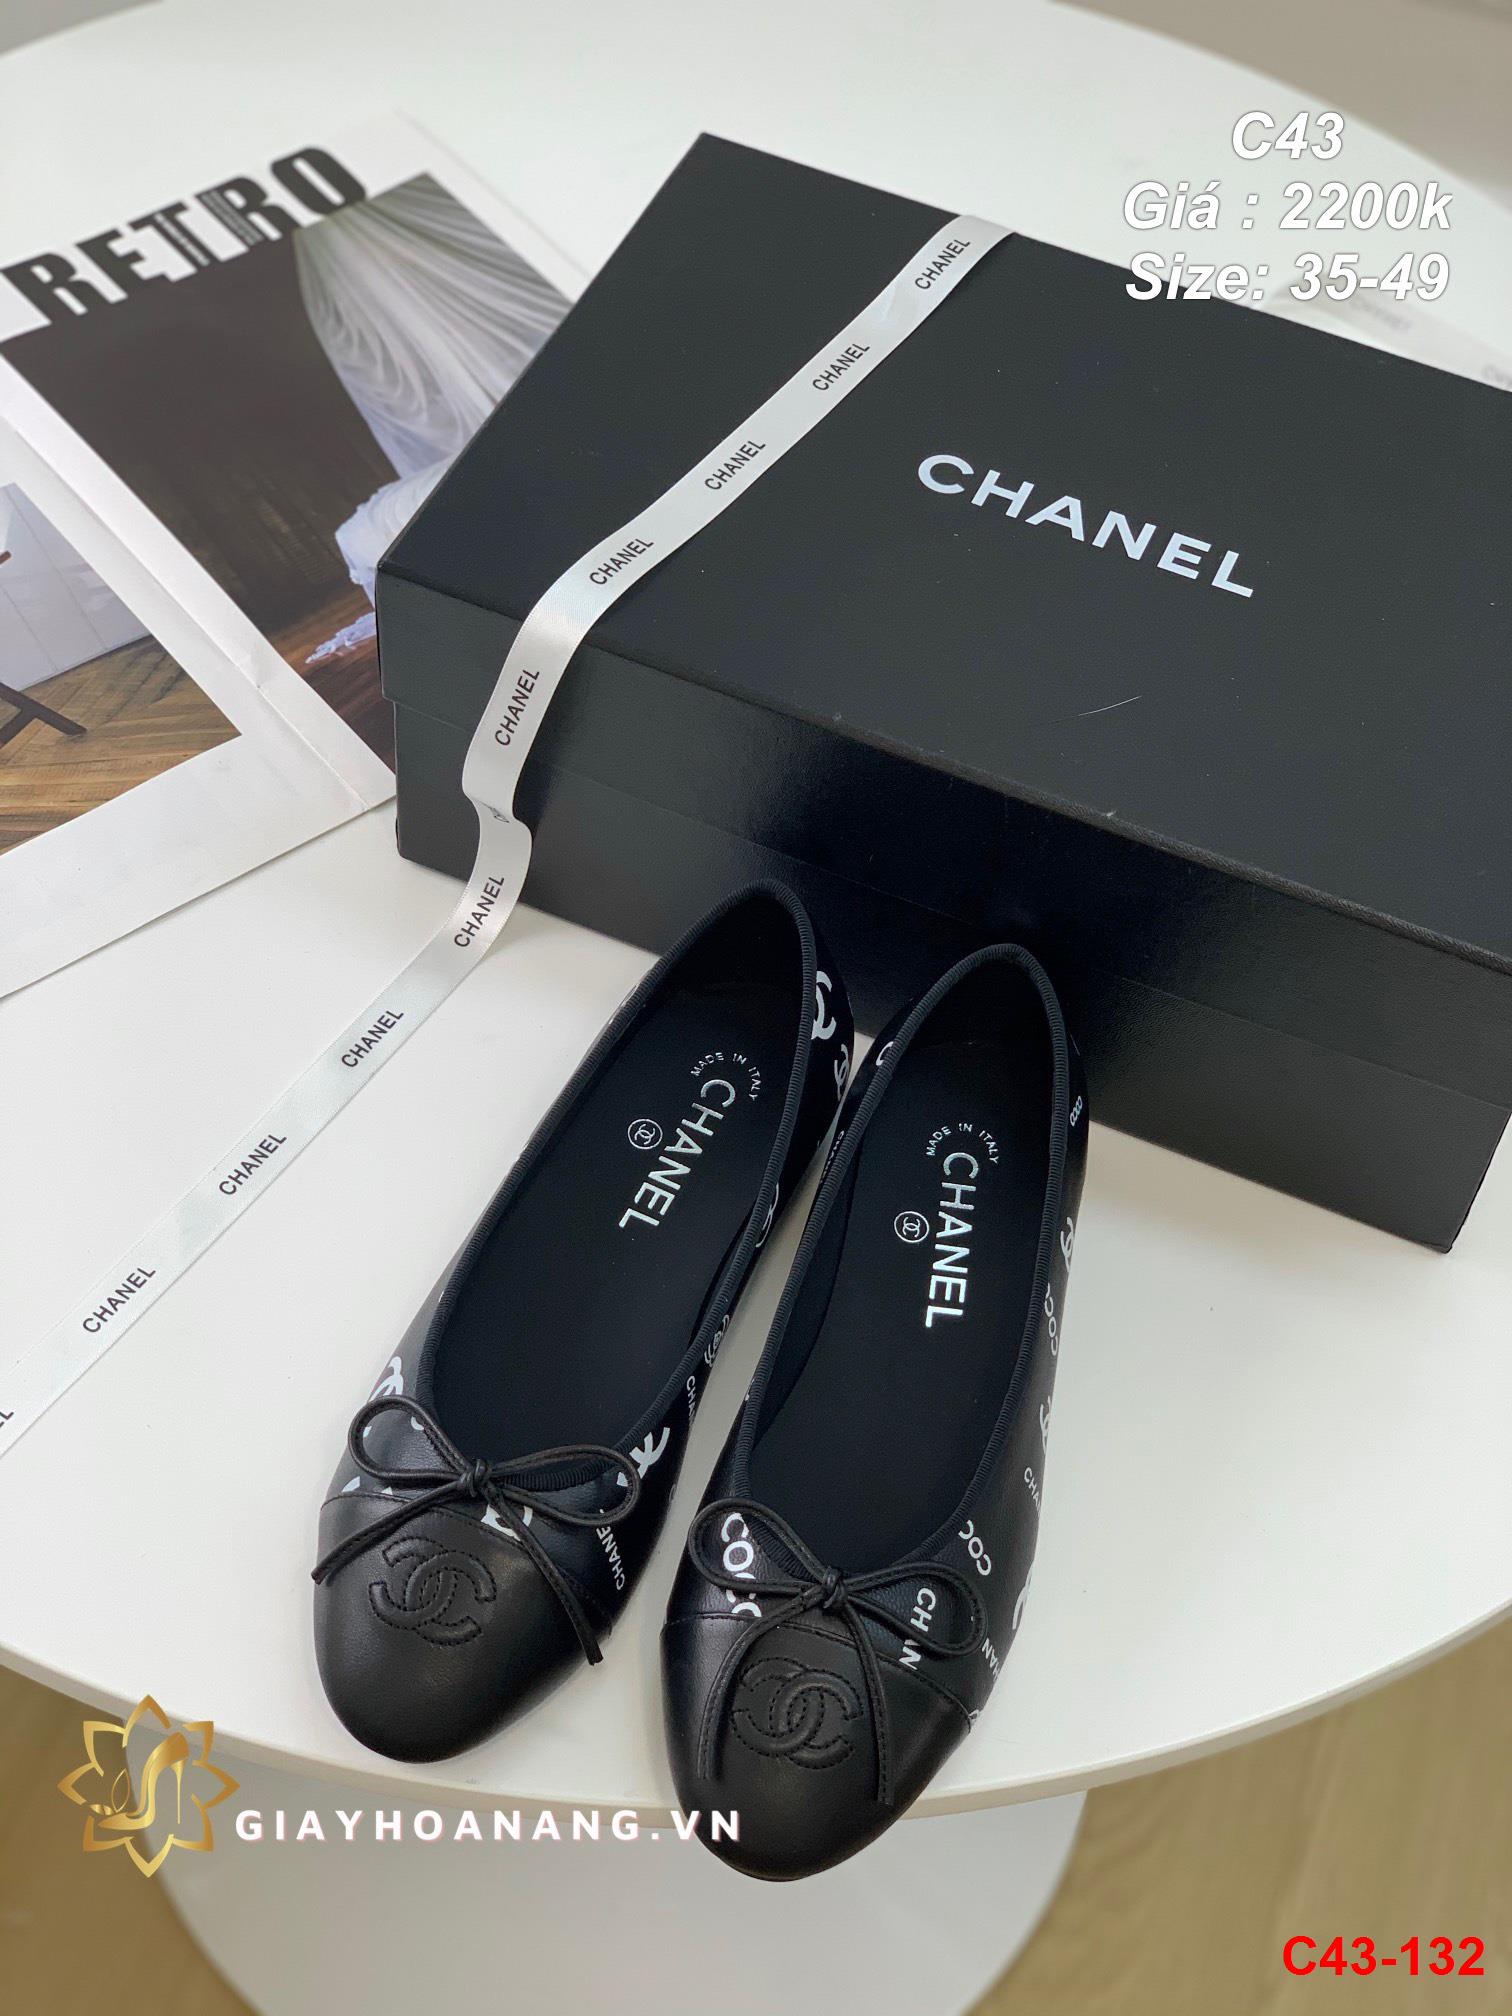 C43-132 Chanel giày bệt siêu cấp